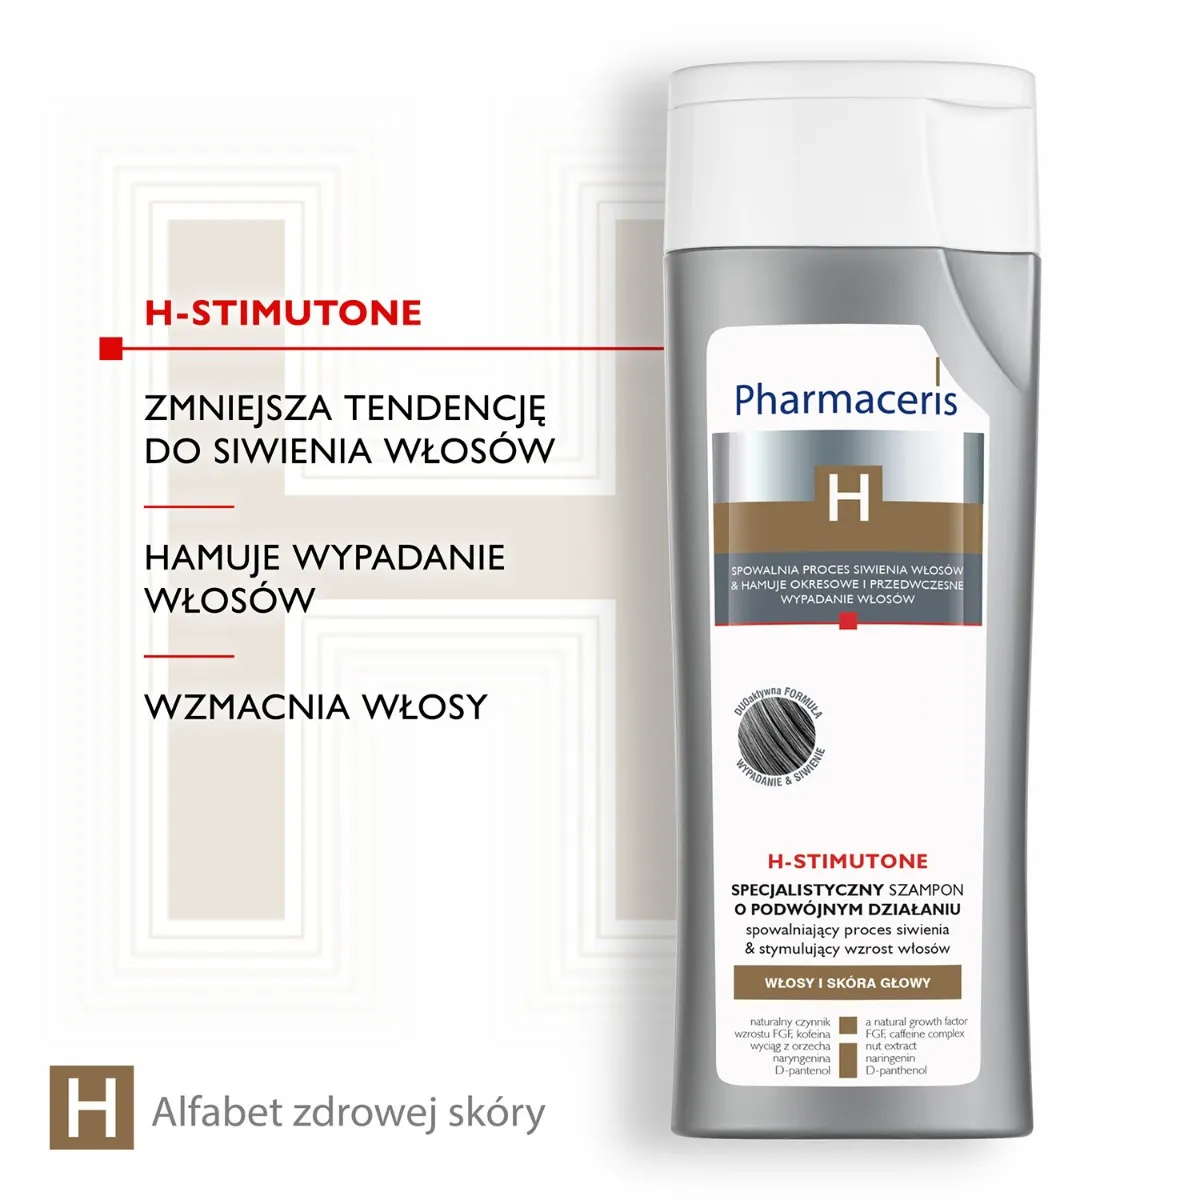 Pharmaceris H Stimutone, szampon spowalniający proces siwienia i stymulujący wzrost włosów, 250 ml 